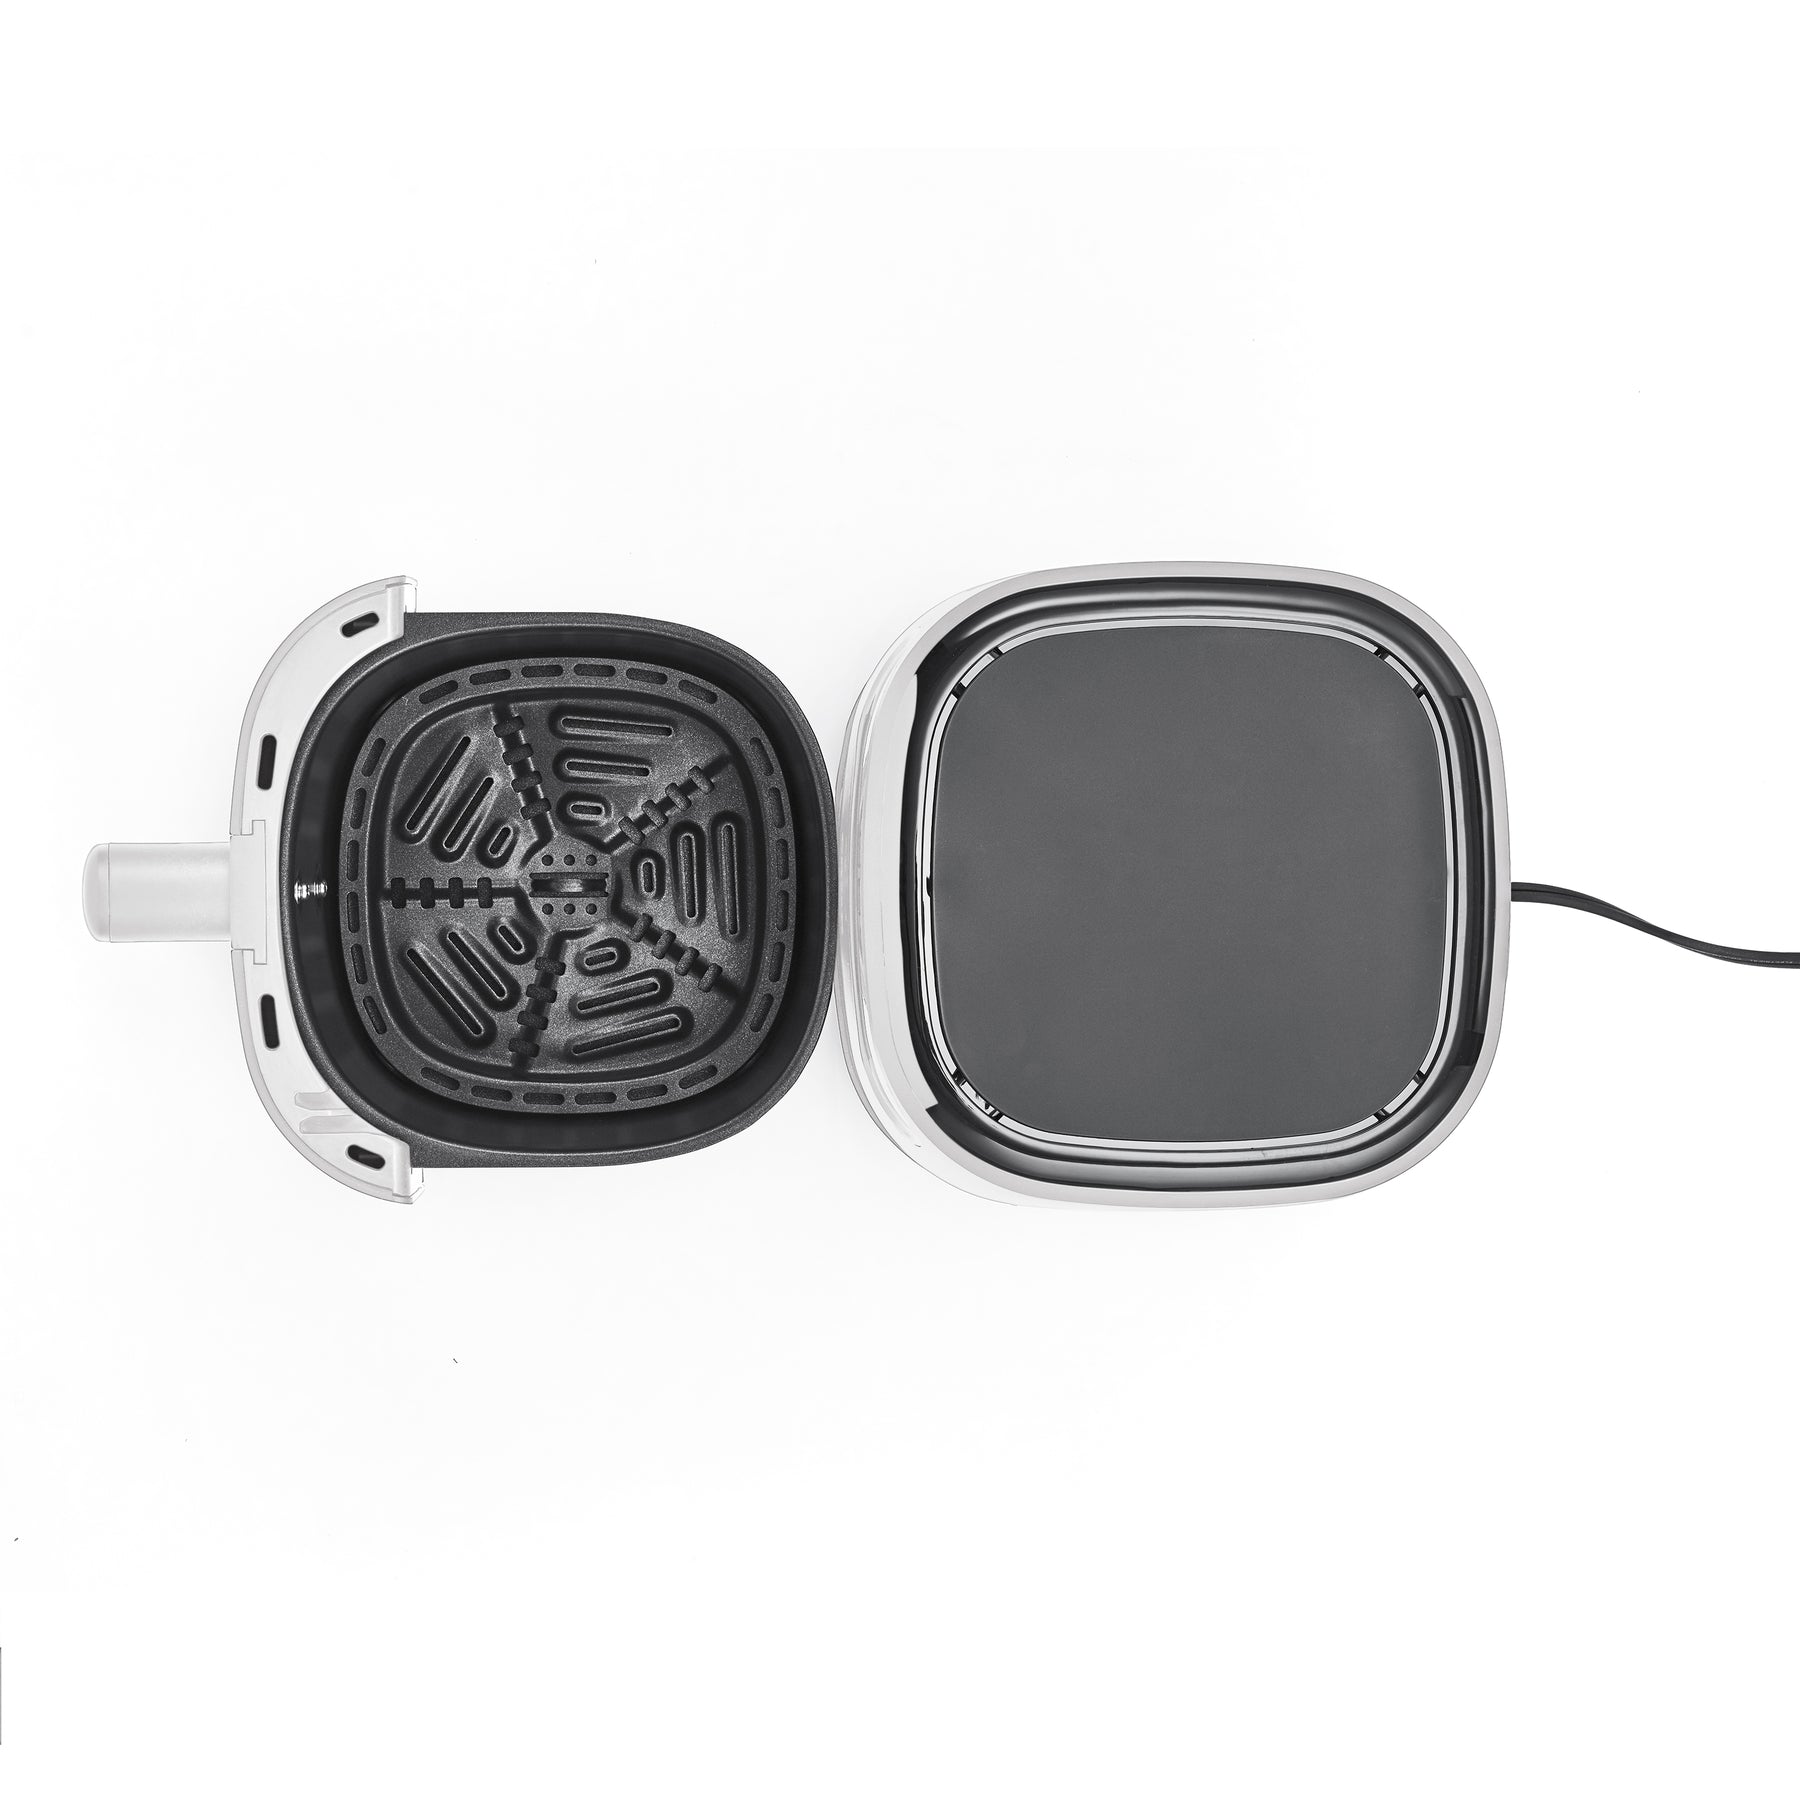 Best Buy: CRUX 3-qt. Digital Air Fryer Kit with TurboCrisp White 17498